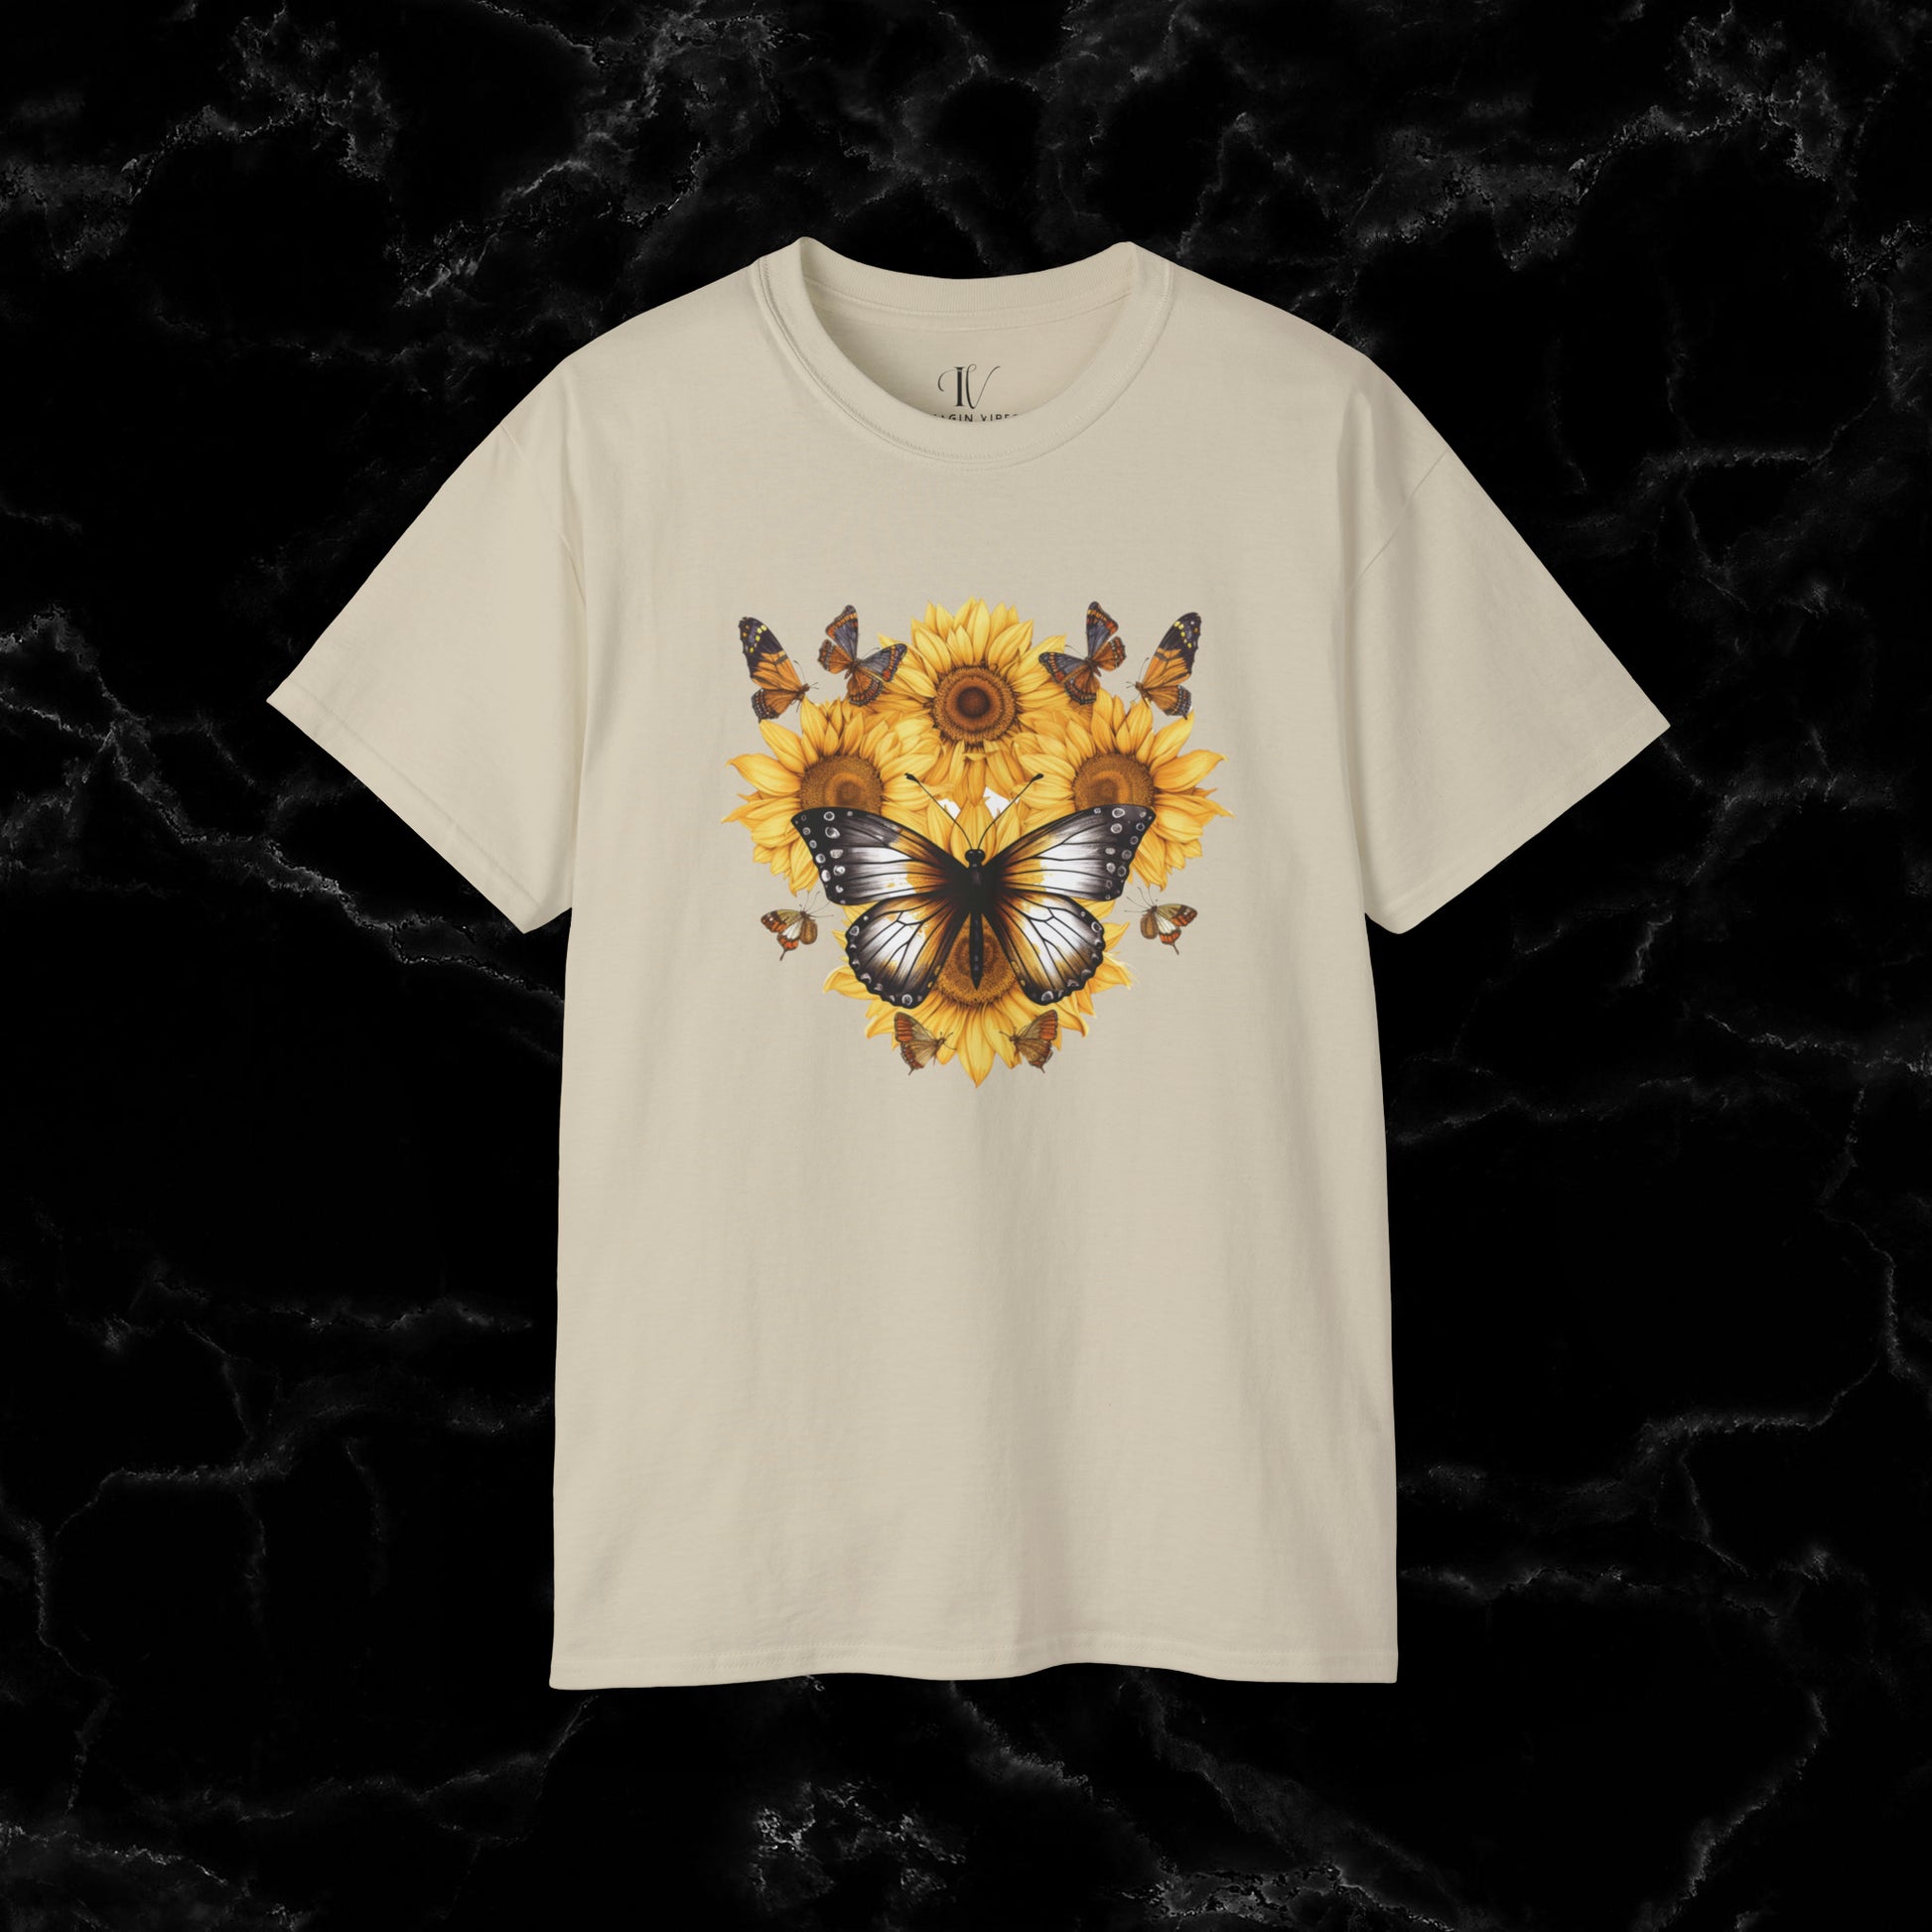 Sunflower Shirt - A Floral Tee, Garden Shirt, and Women's Fall Shirt with Nature-Inspired Design T-Shirt Sand S 